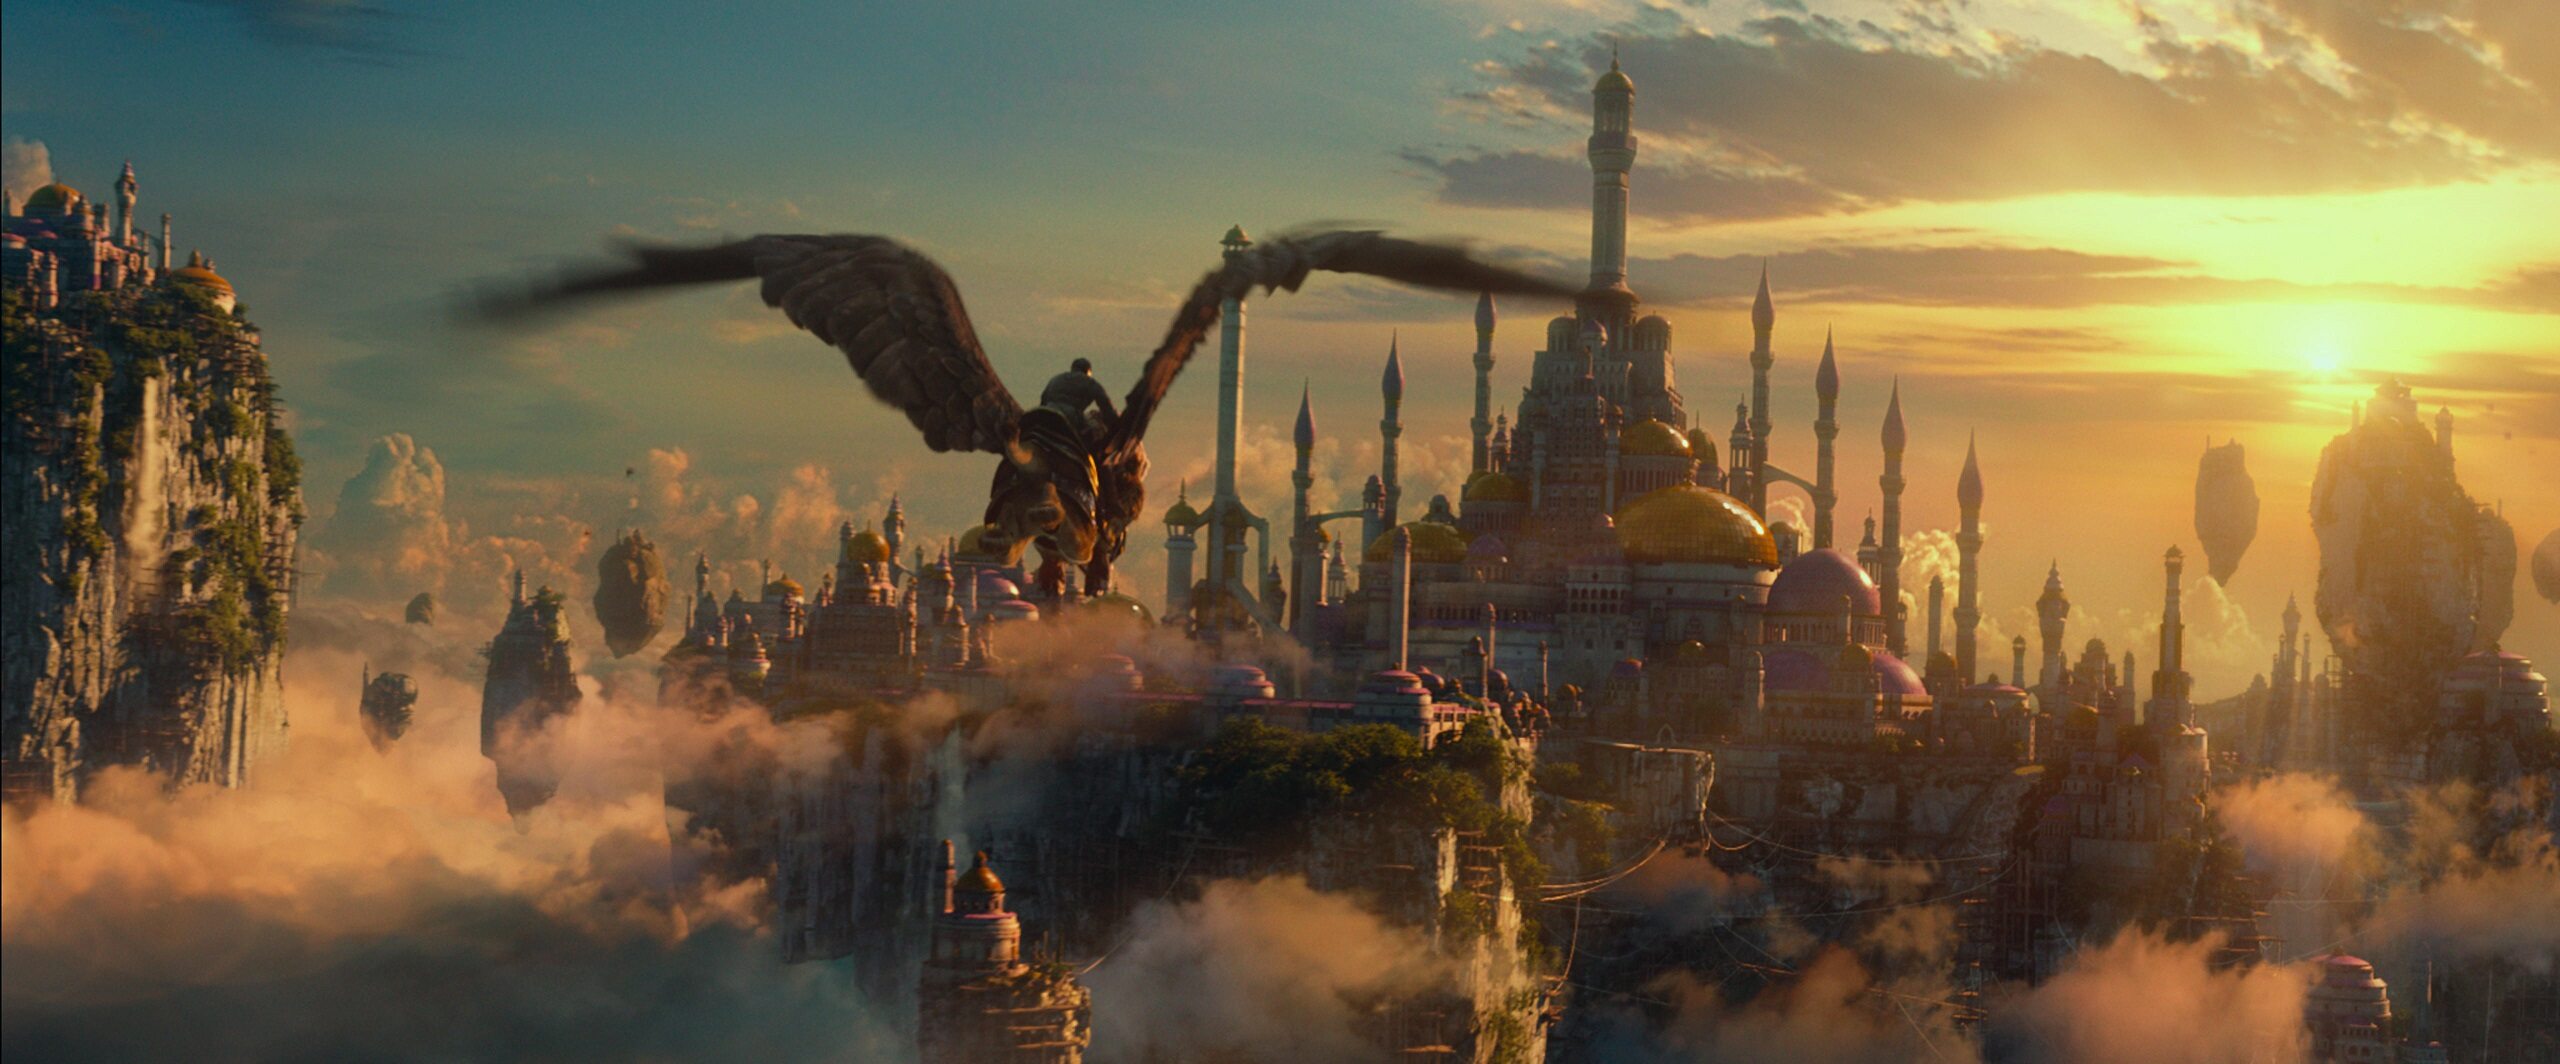 kadr z filmu "Warcraft: Początek" (2016)